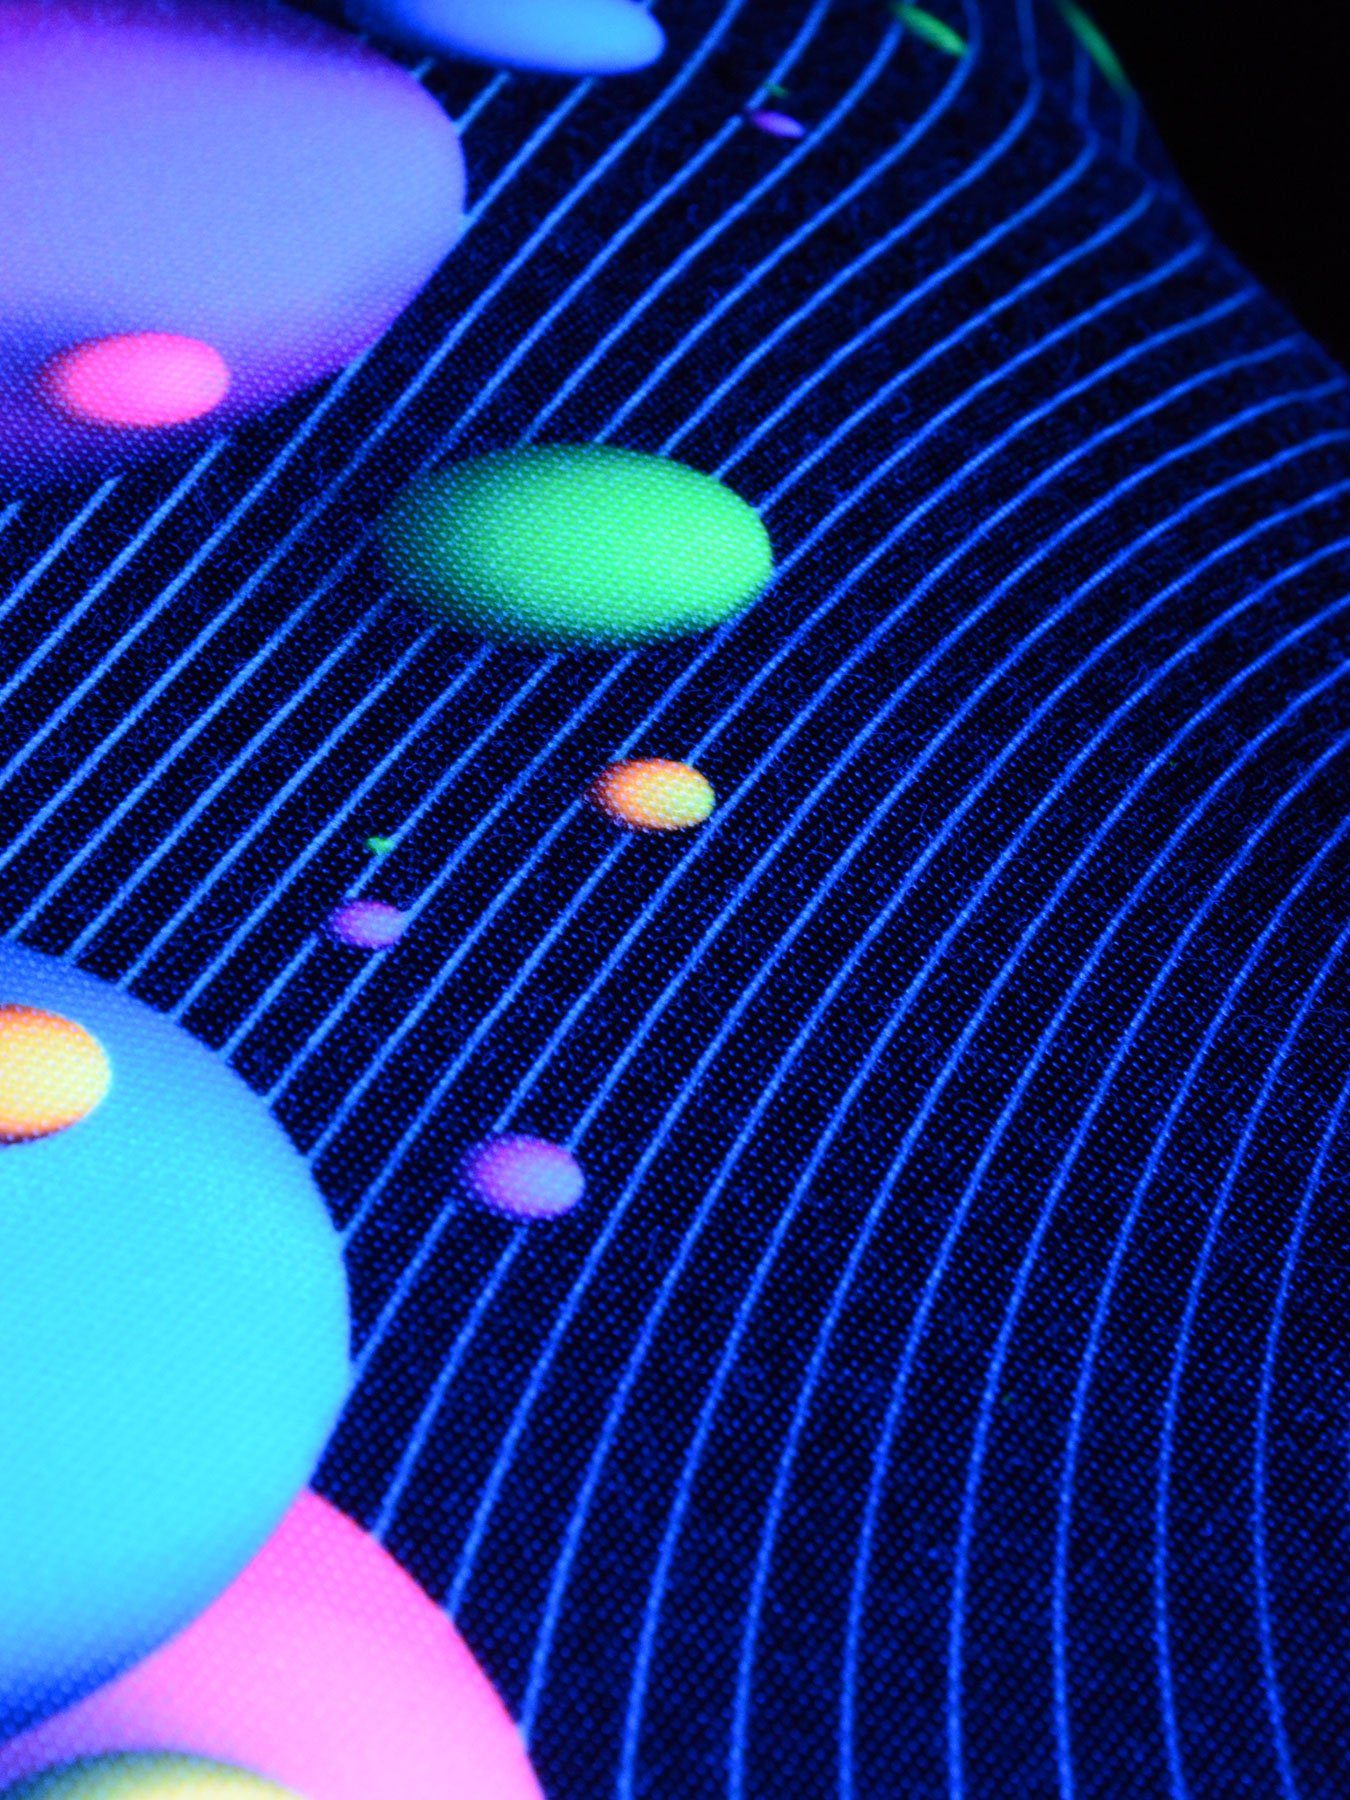 Schwarzlicht Dekokissen leuchtet 30x50cm, Bubbles", PSYWORK Kissen UV-aktiv, Neon "Happy Schwarzlicht unter